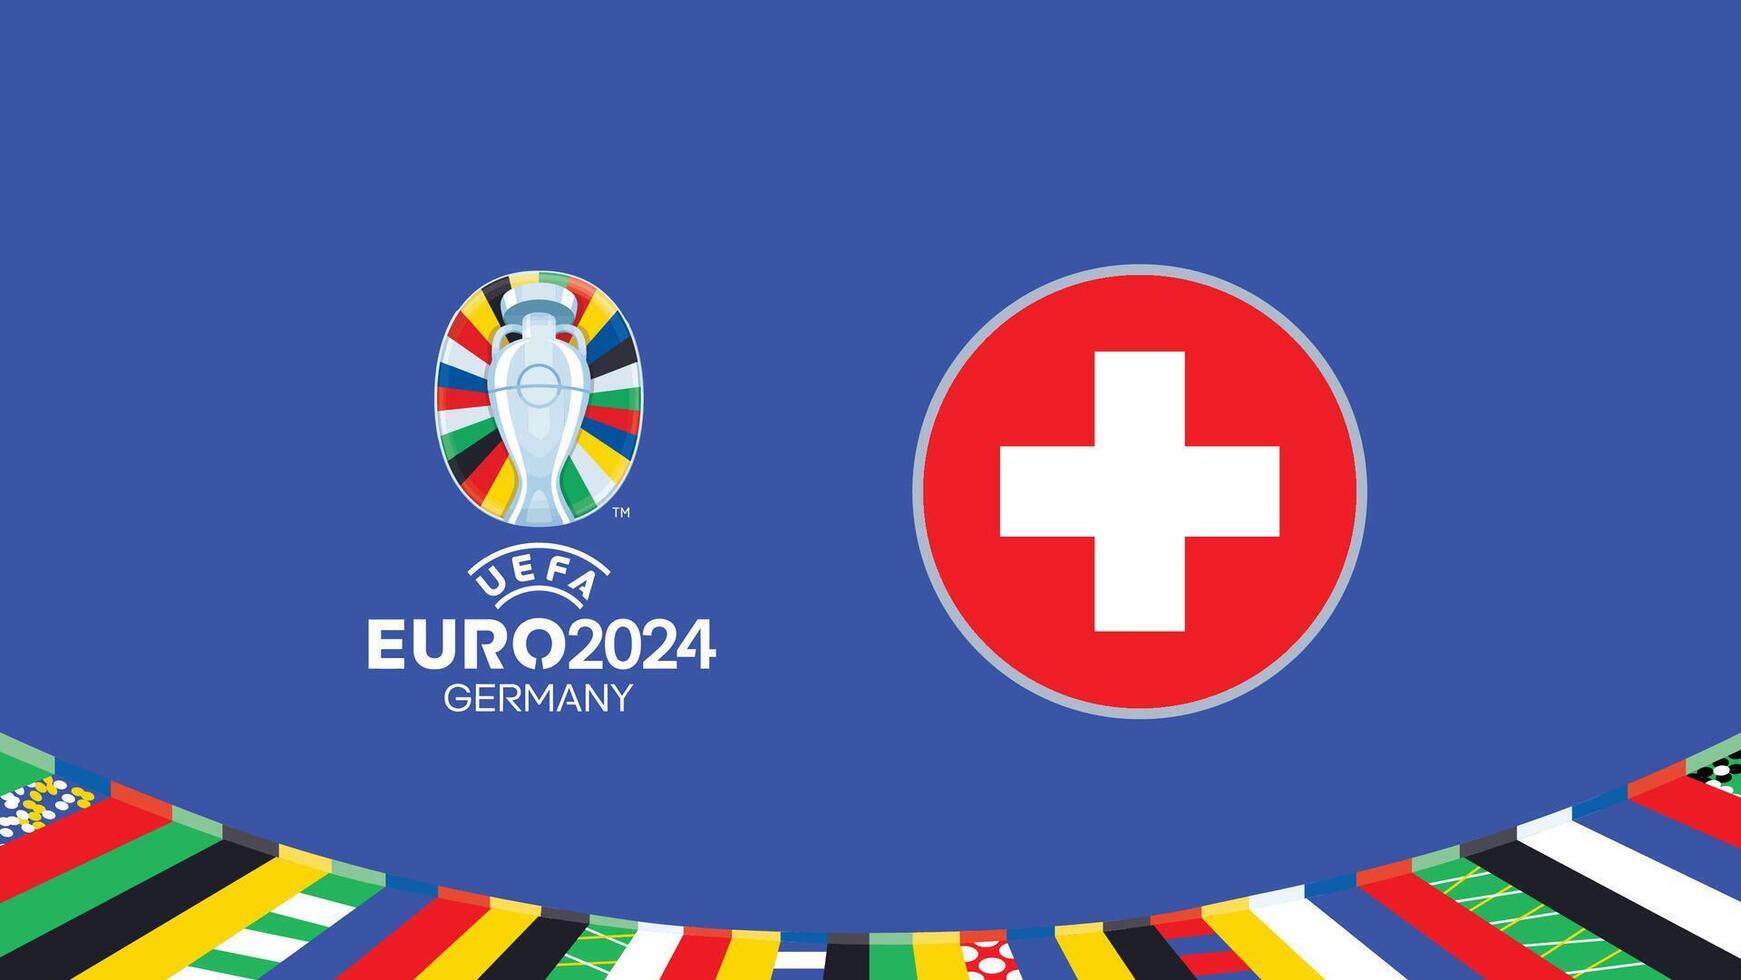 Euro 2024 Deutschland Schweiz Flagge Teams Design mit offiziell Symbol Logo abstrakt Länder europäisch Fußball Illustration vektor